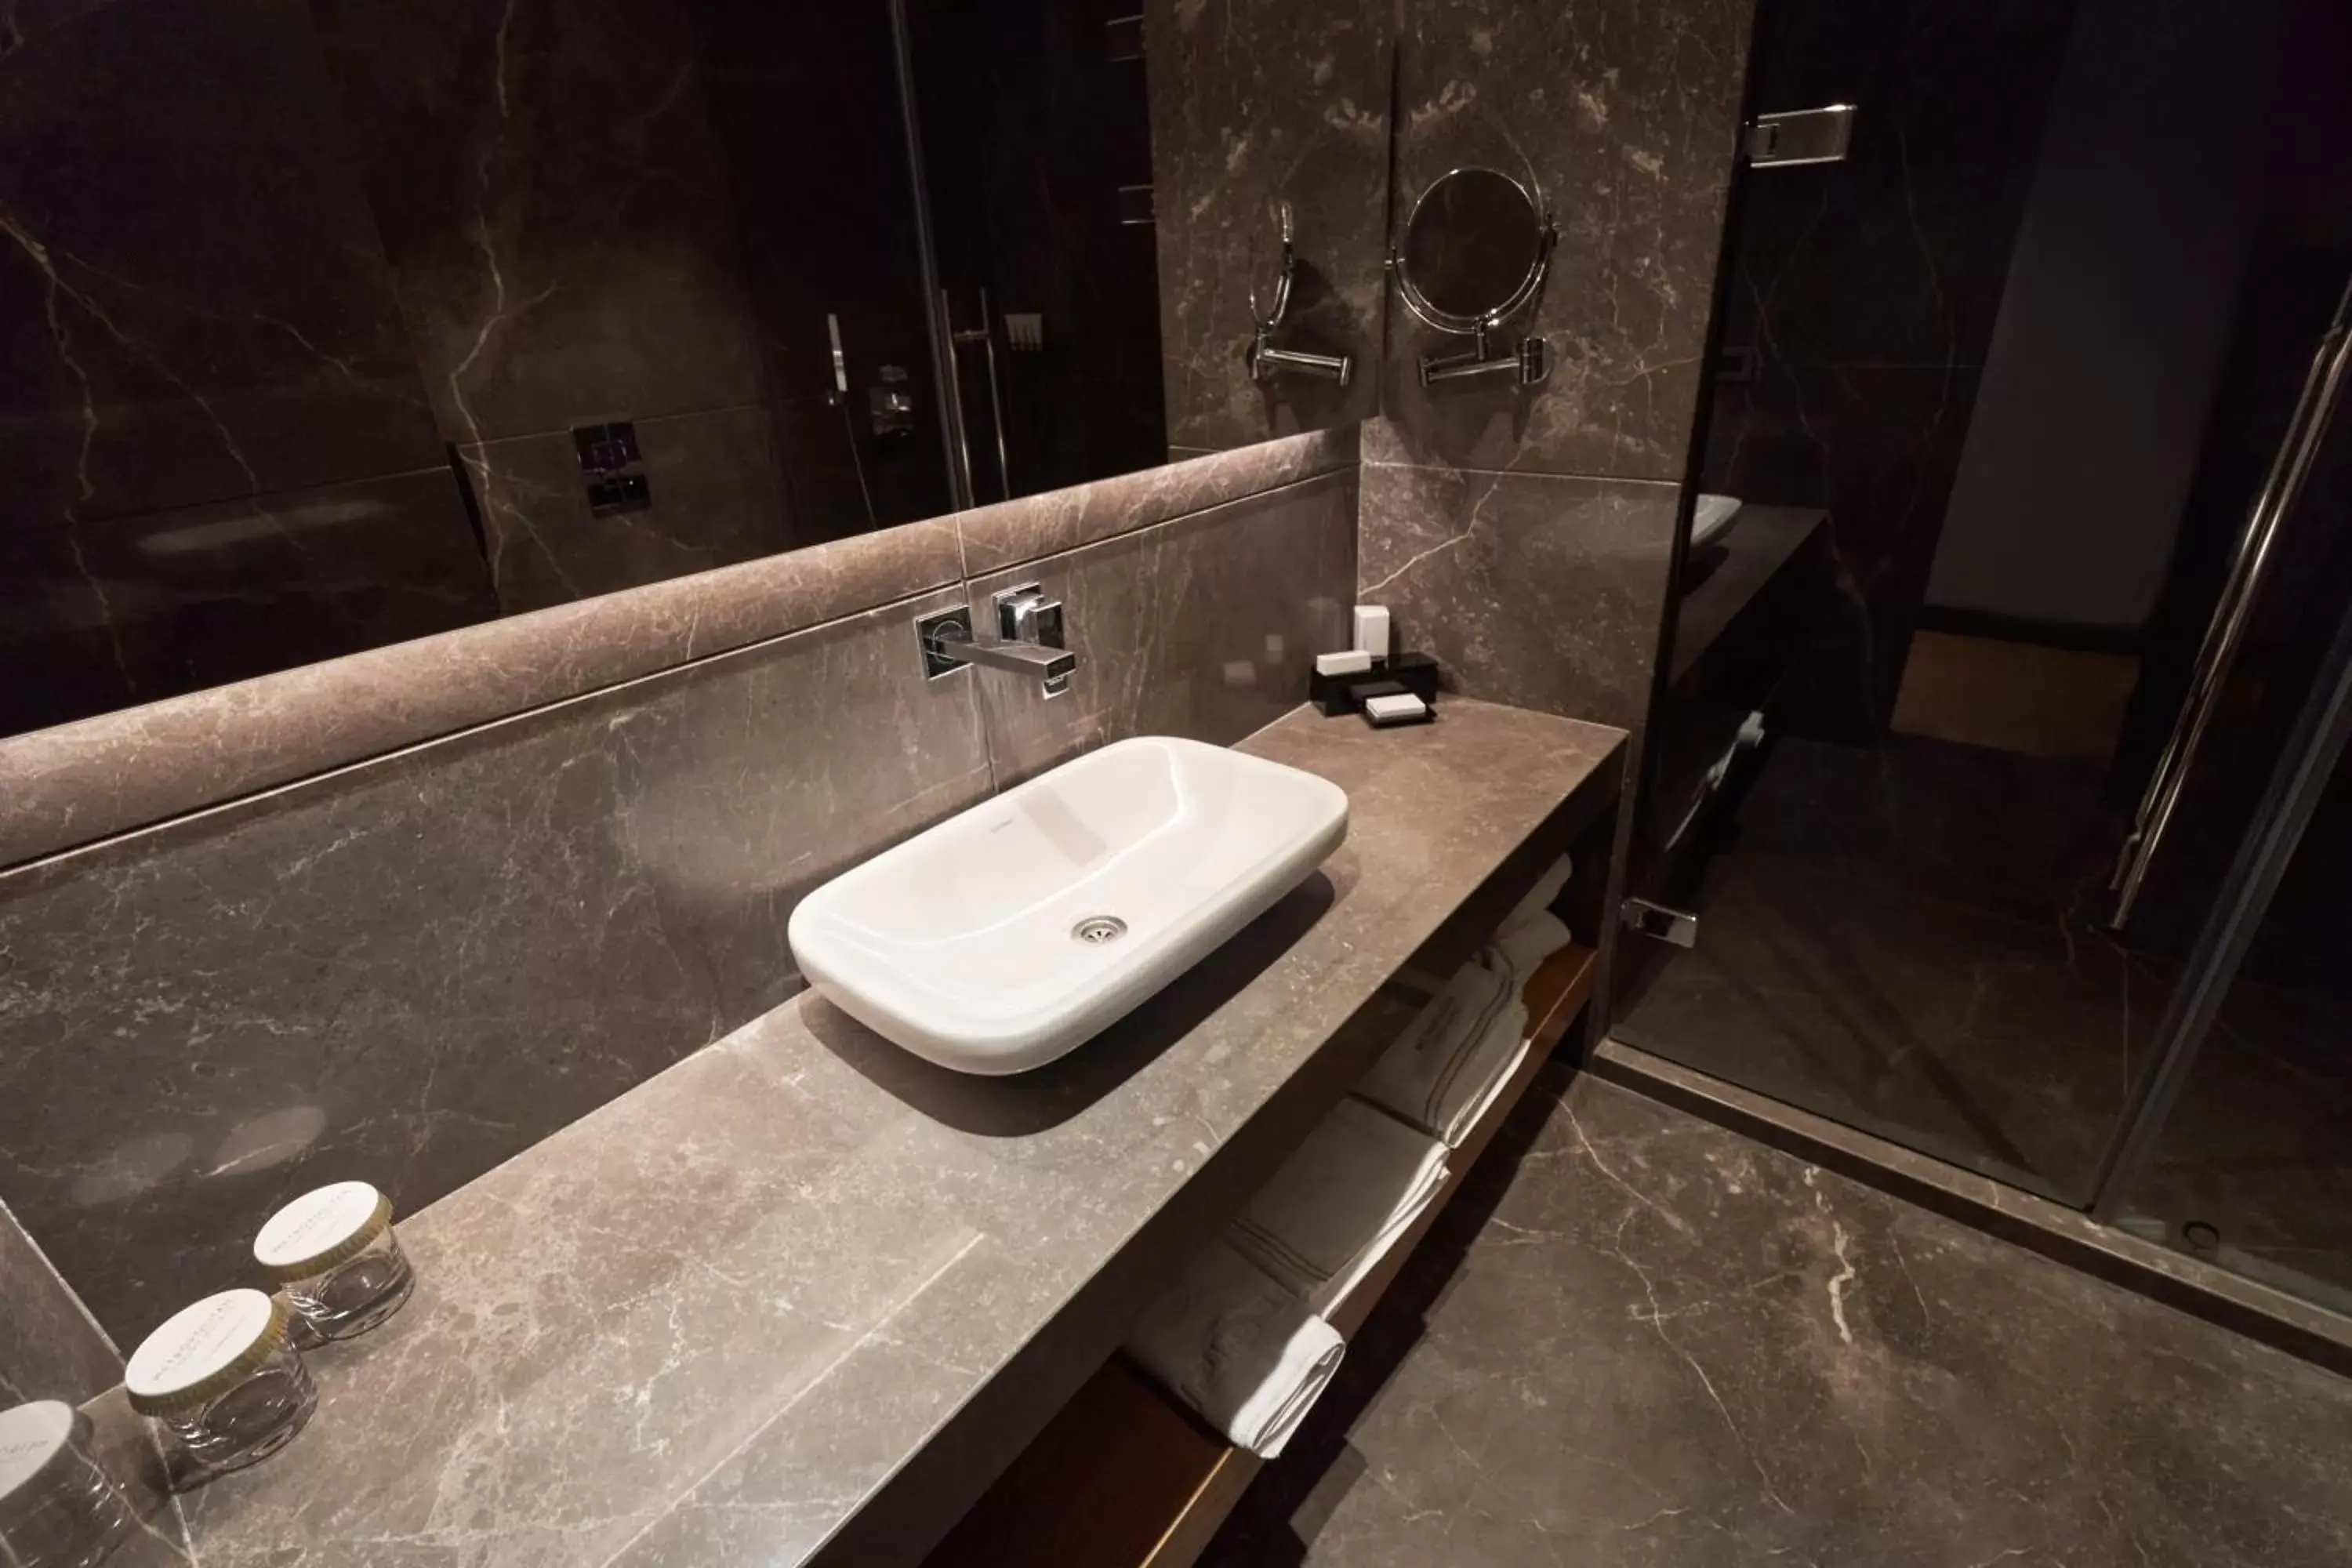 Bathroom in Metropolitan Hotels Bosphorus